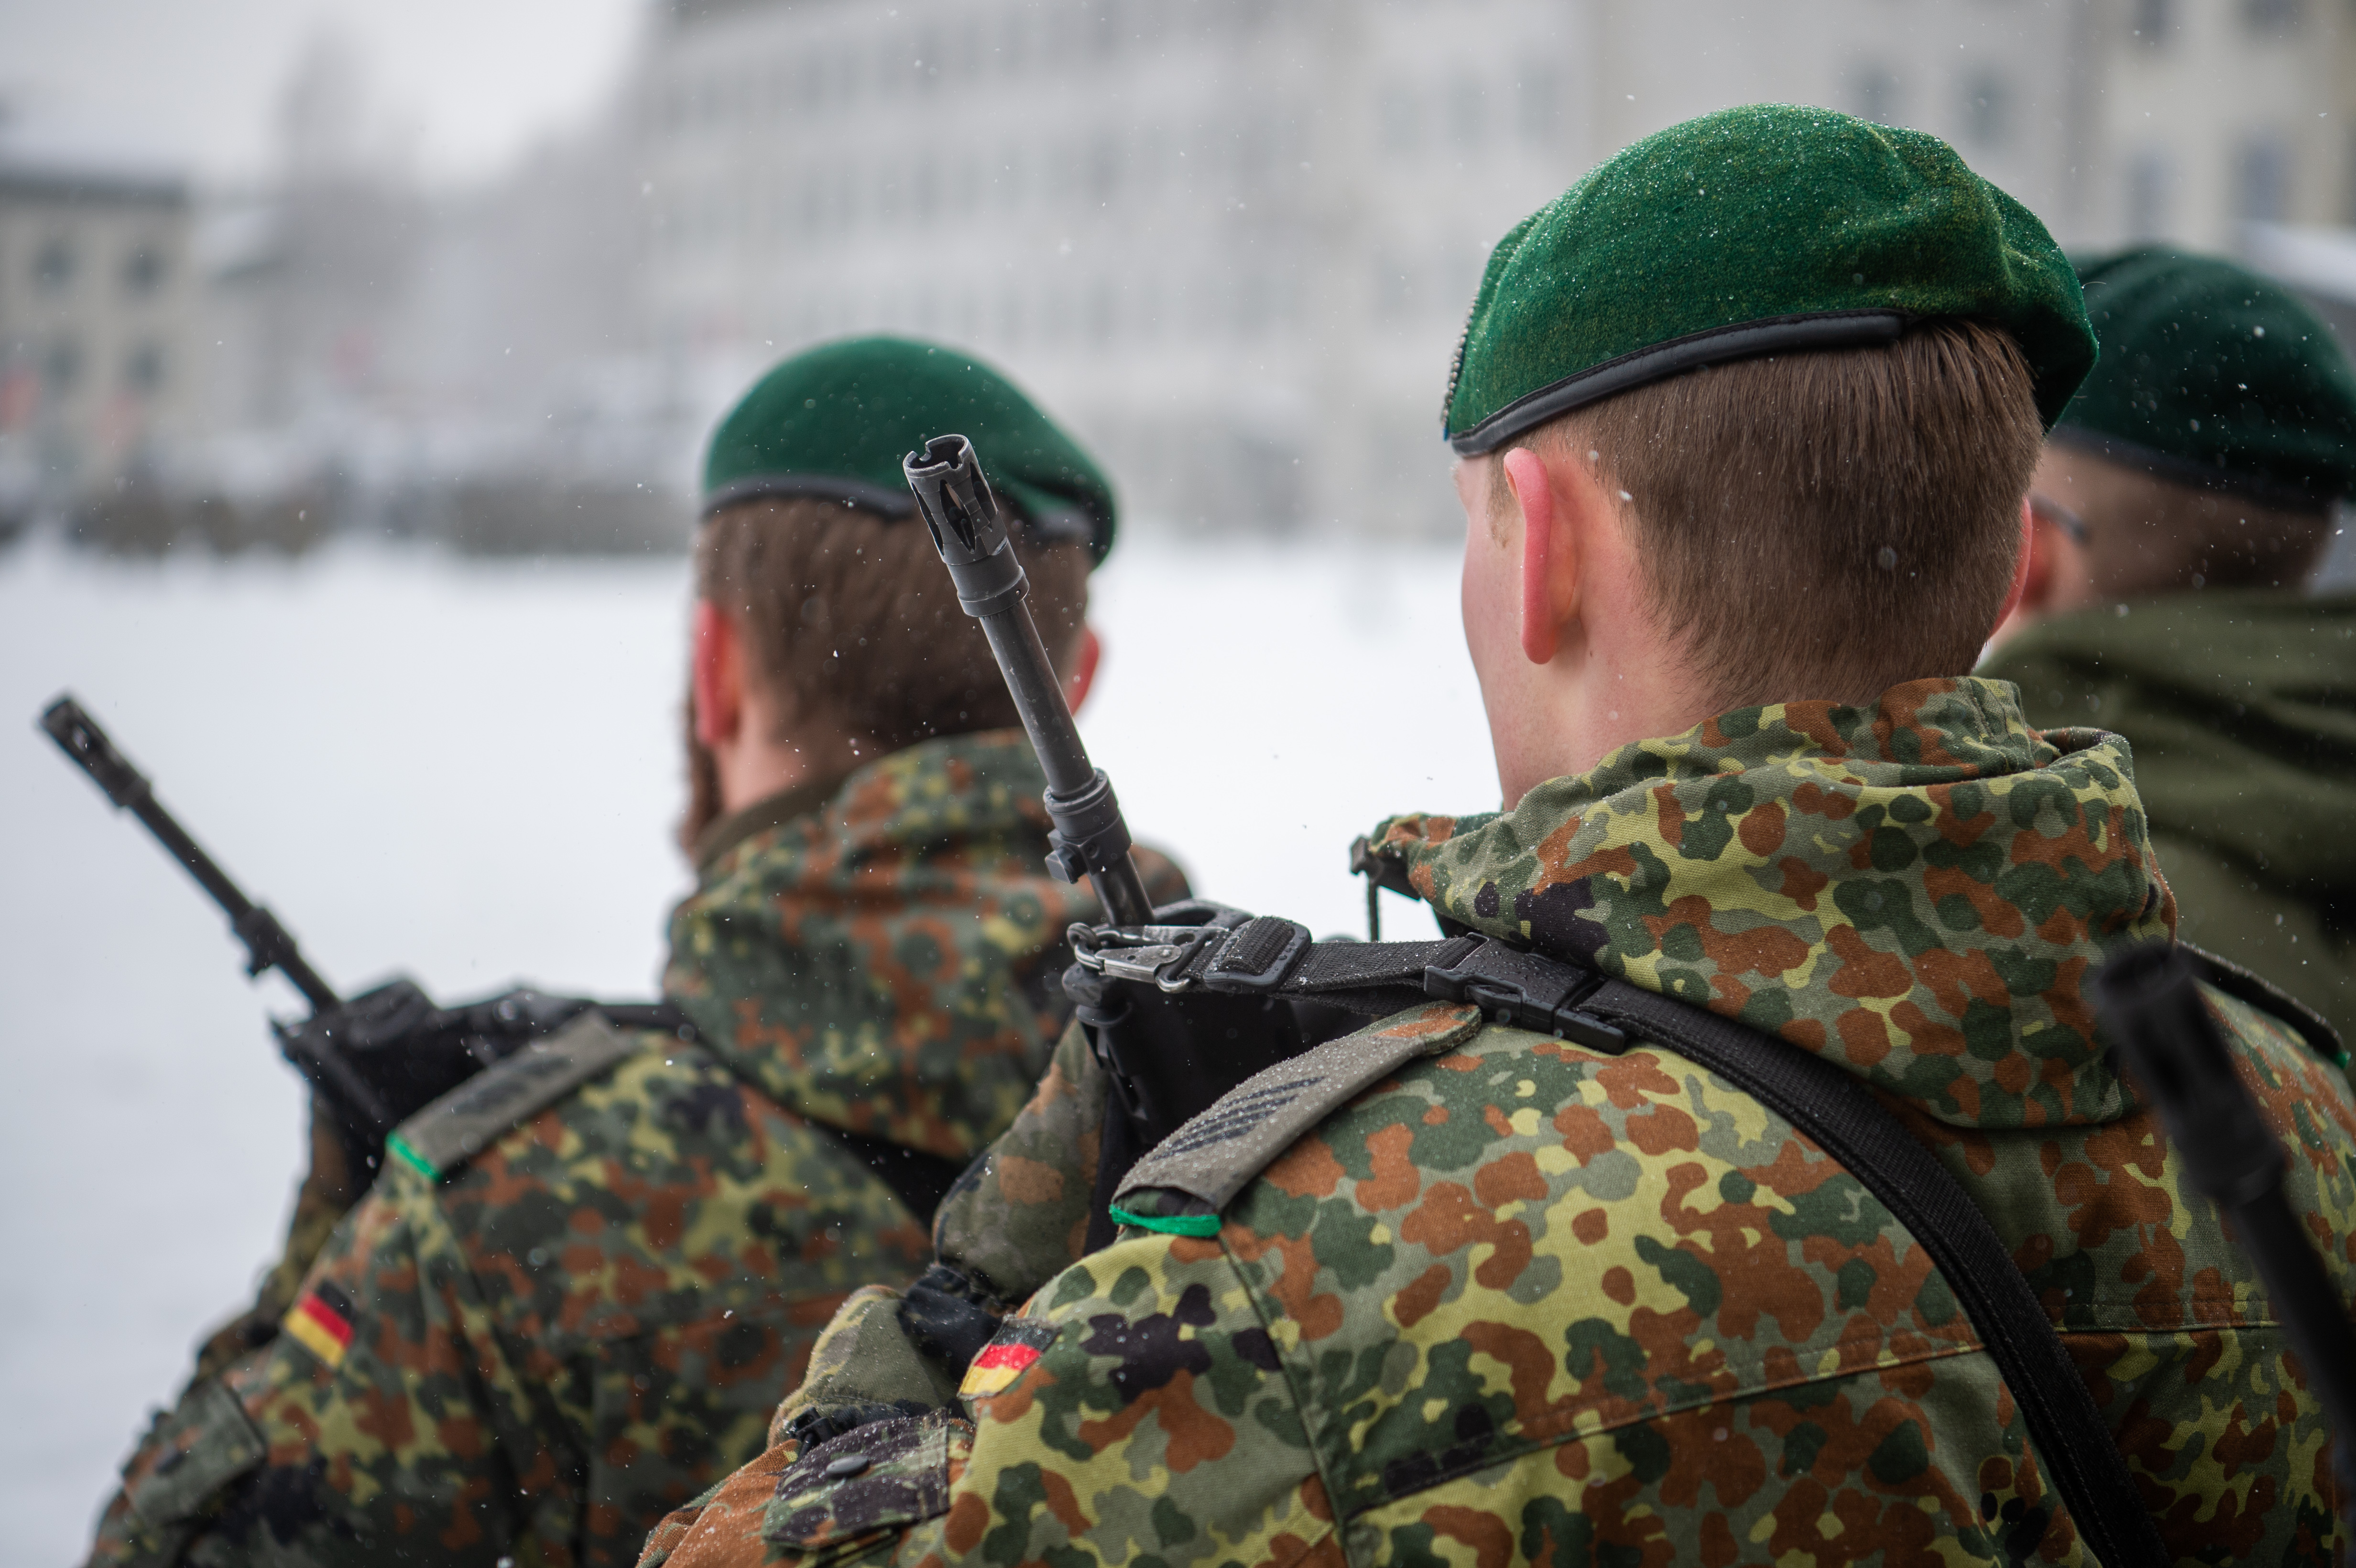 Németország vezető szerepet vállalna a NATO-ban, csak a hadserege erre még nem áll készen